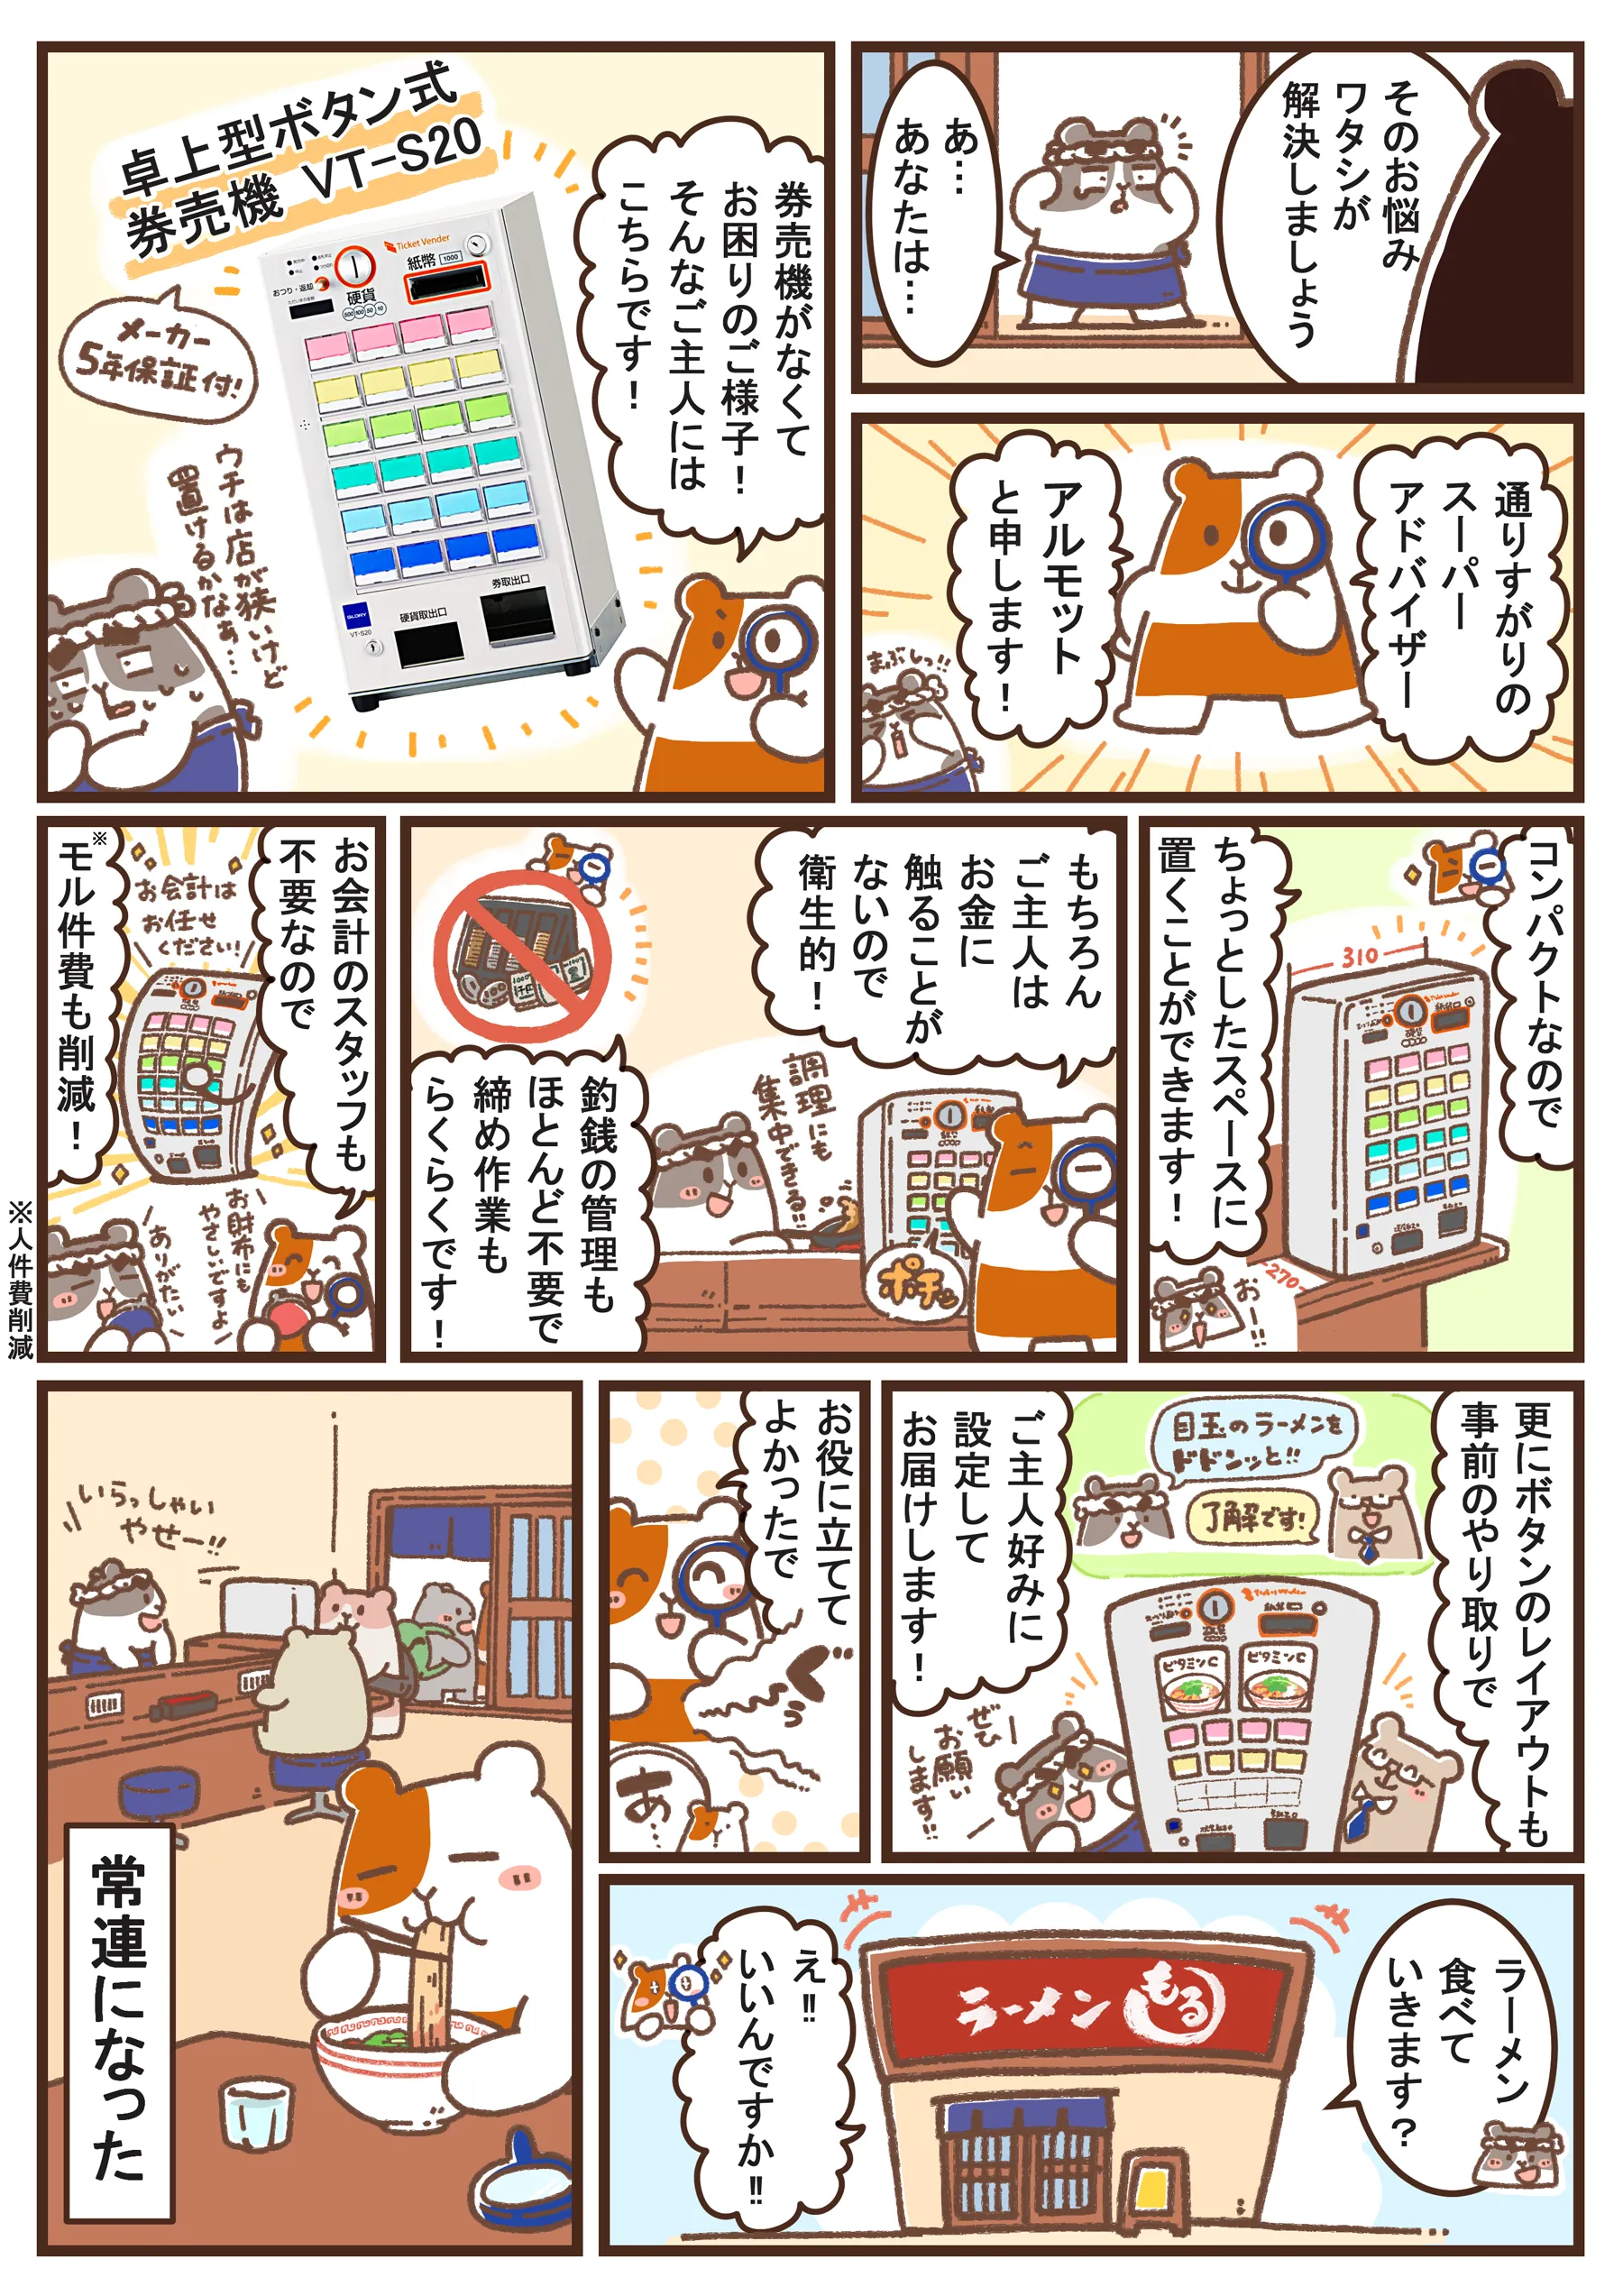 隣のアルモットくん 第1話 券売機VT-S20　漫画